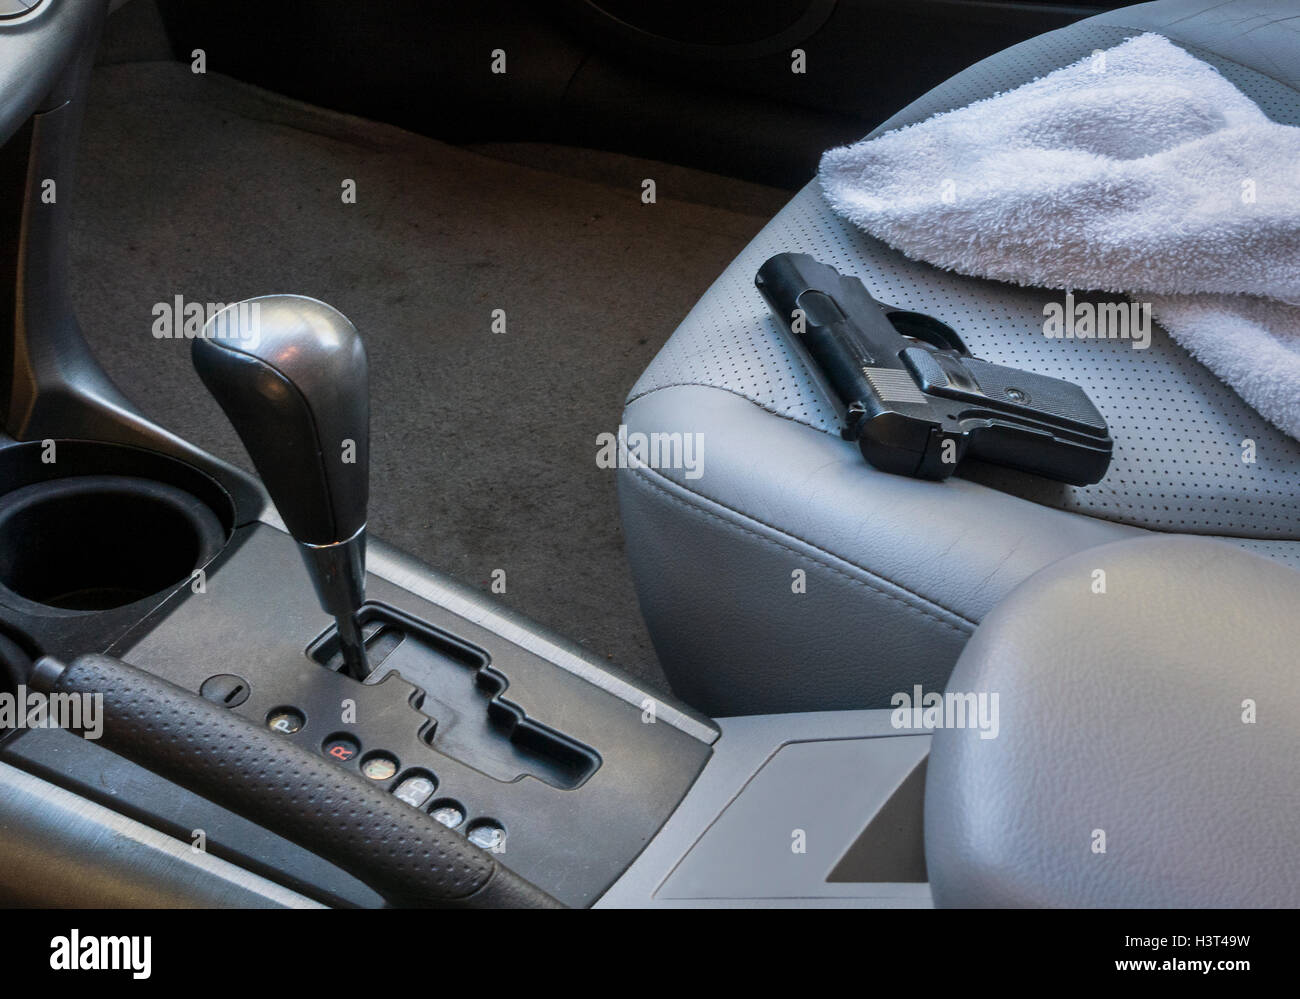 gun on seat in car Stock Photo